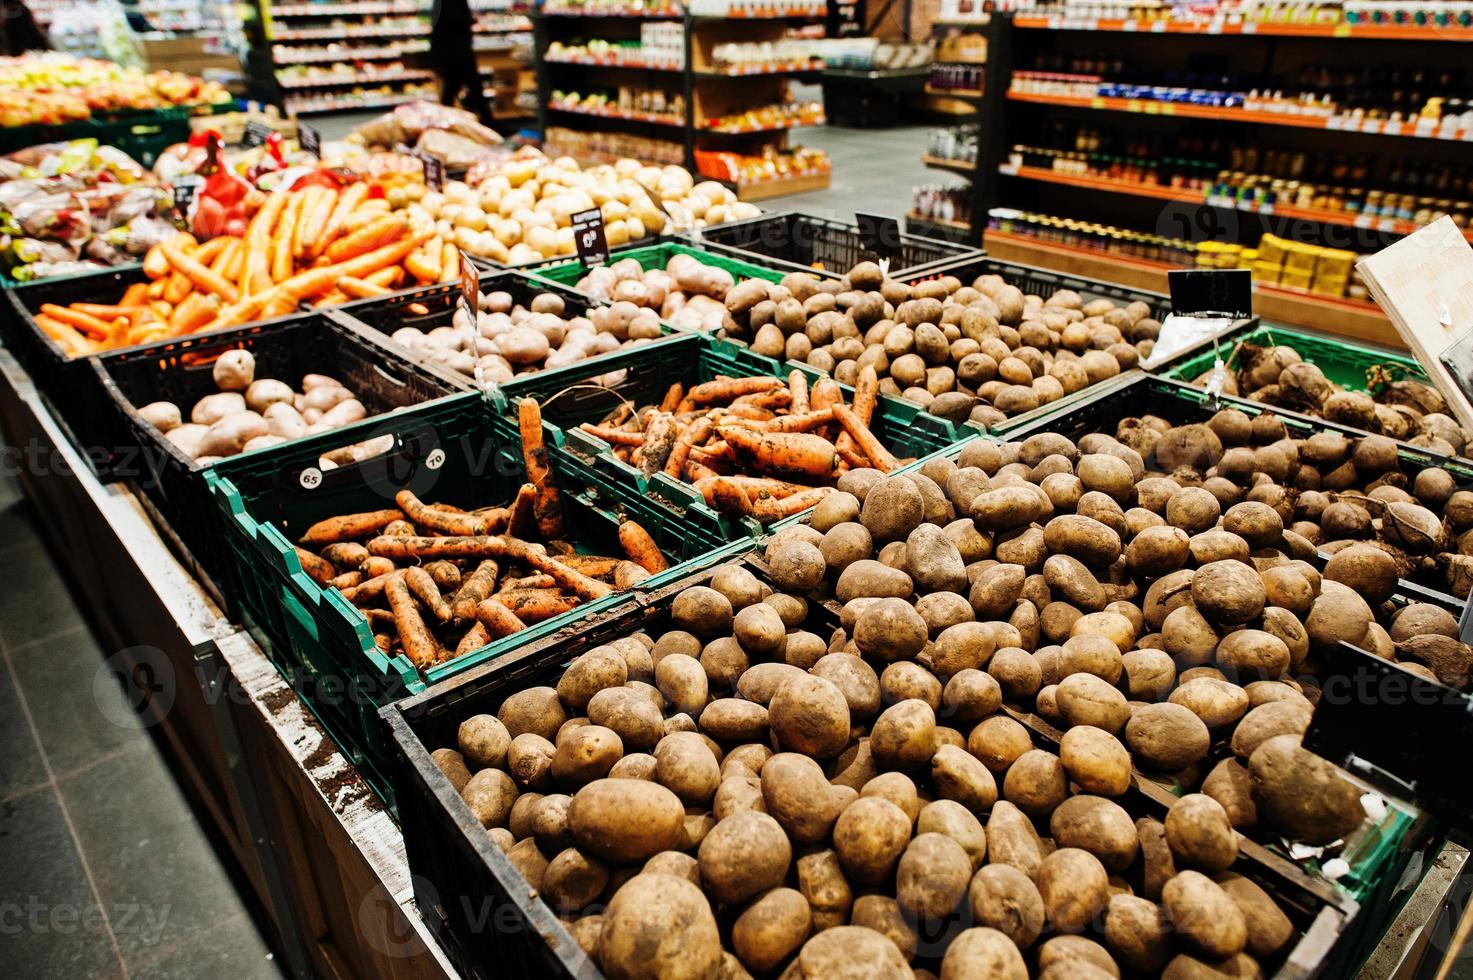 potatis, morot och andra grönsaker på lådor på snabbköpet. foto